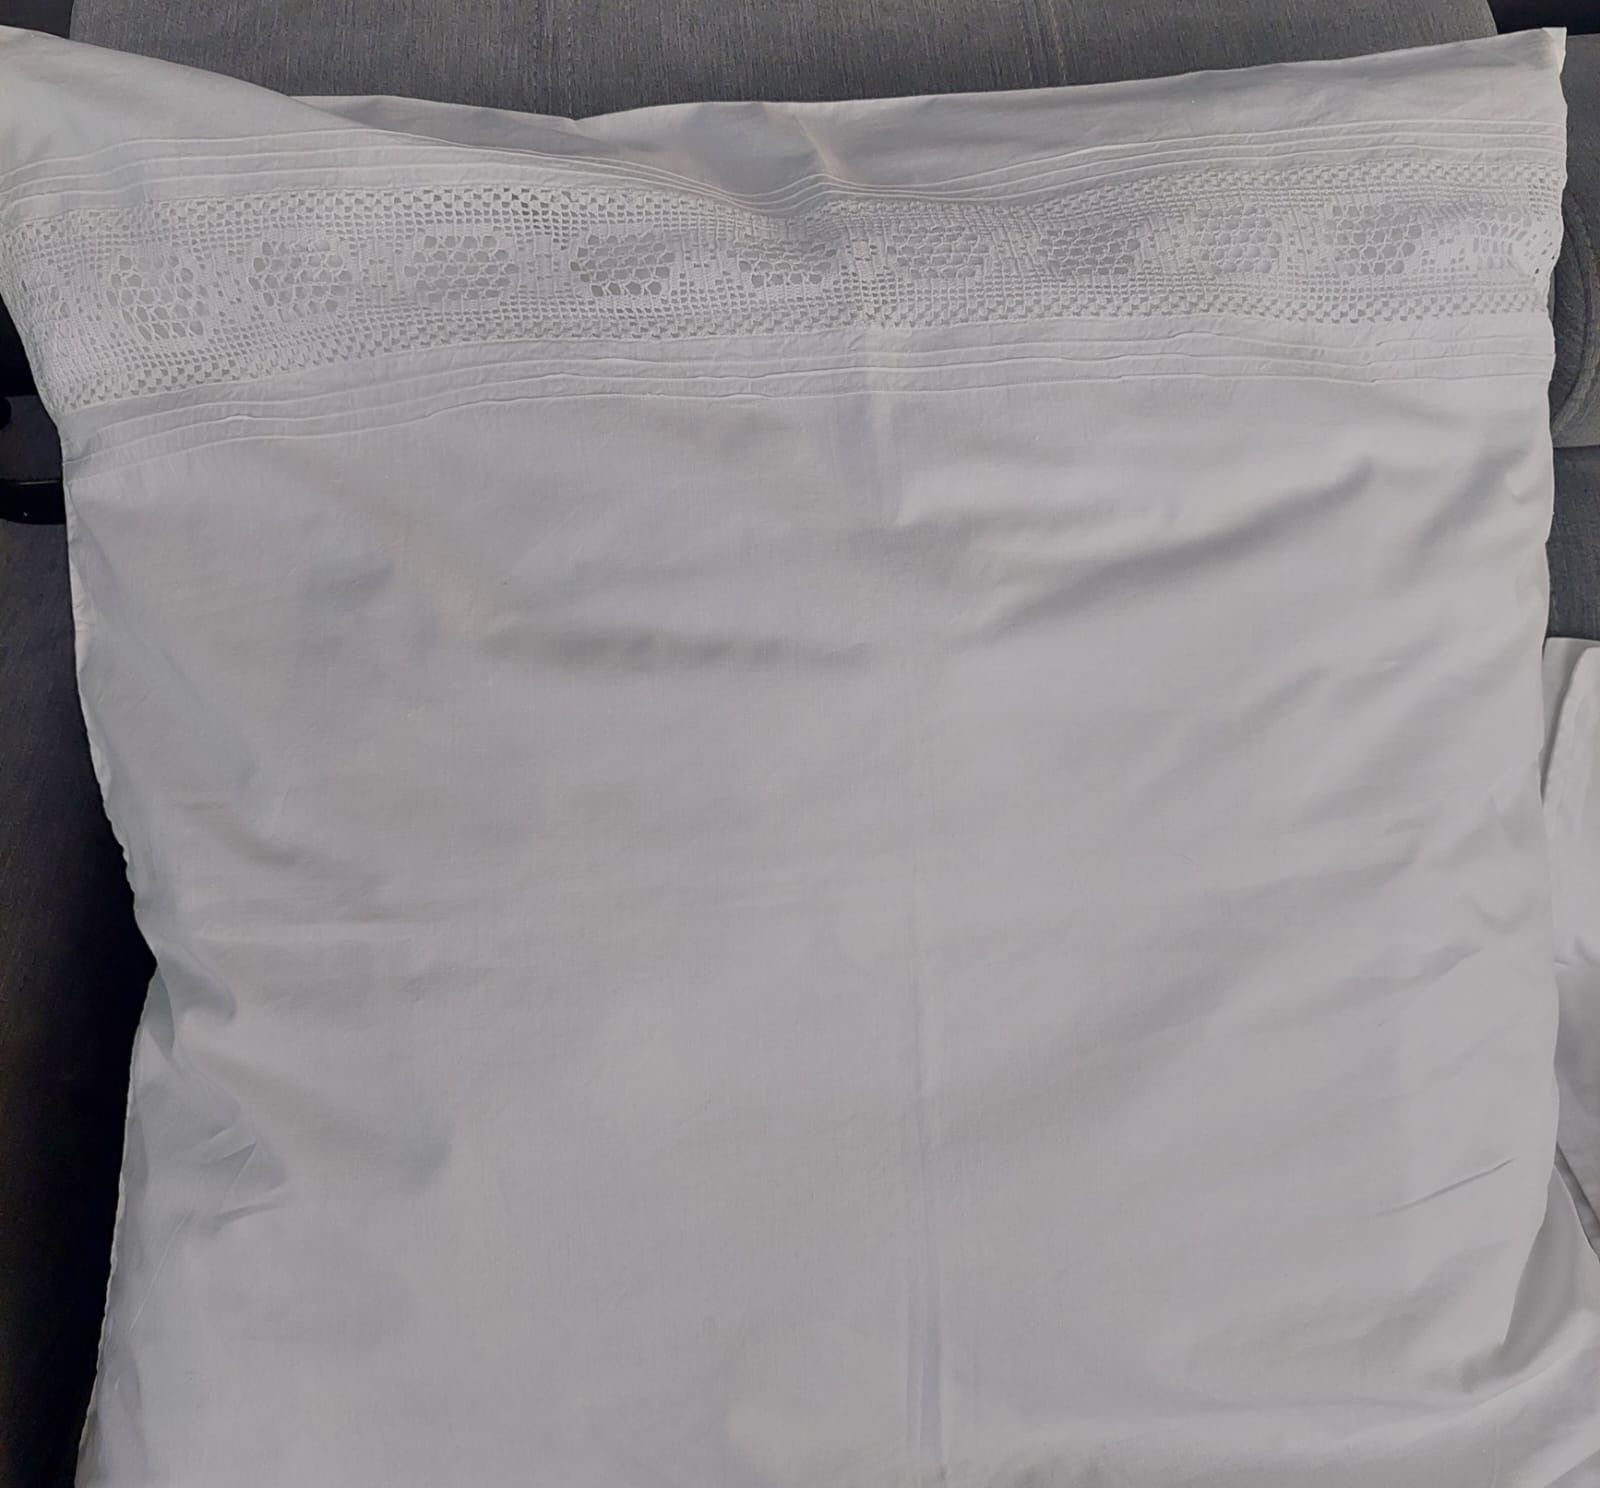 Powłoka bawełniana na poduszkę, efektowne rękodzieło, wstawki wykonane